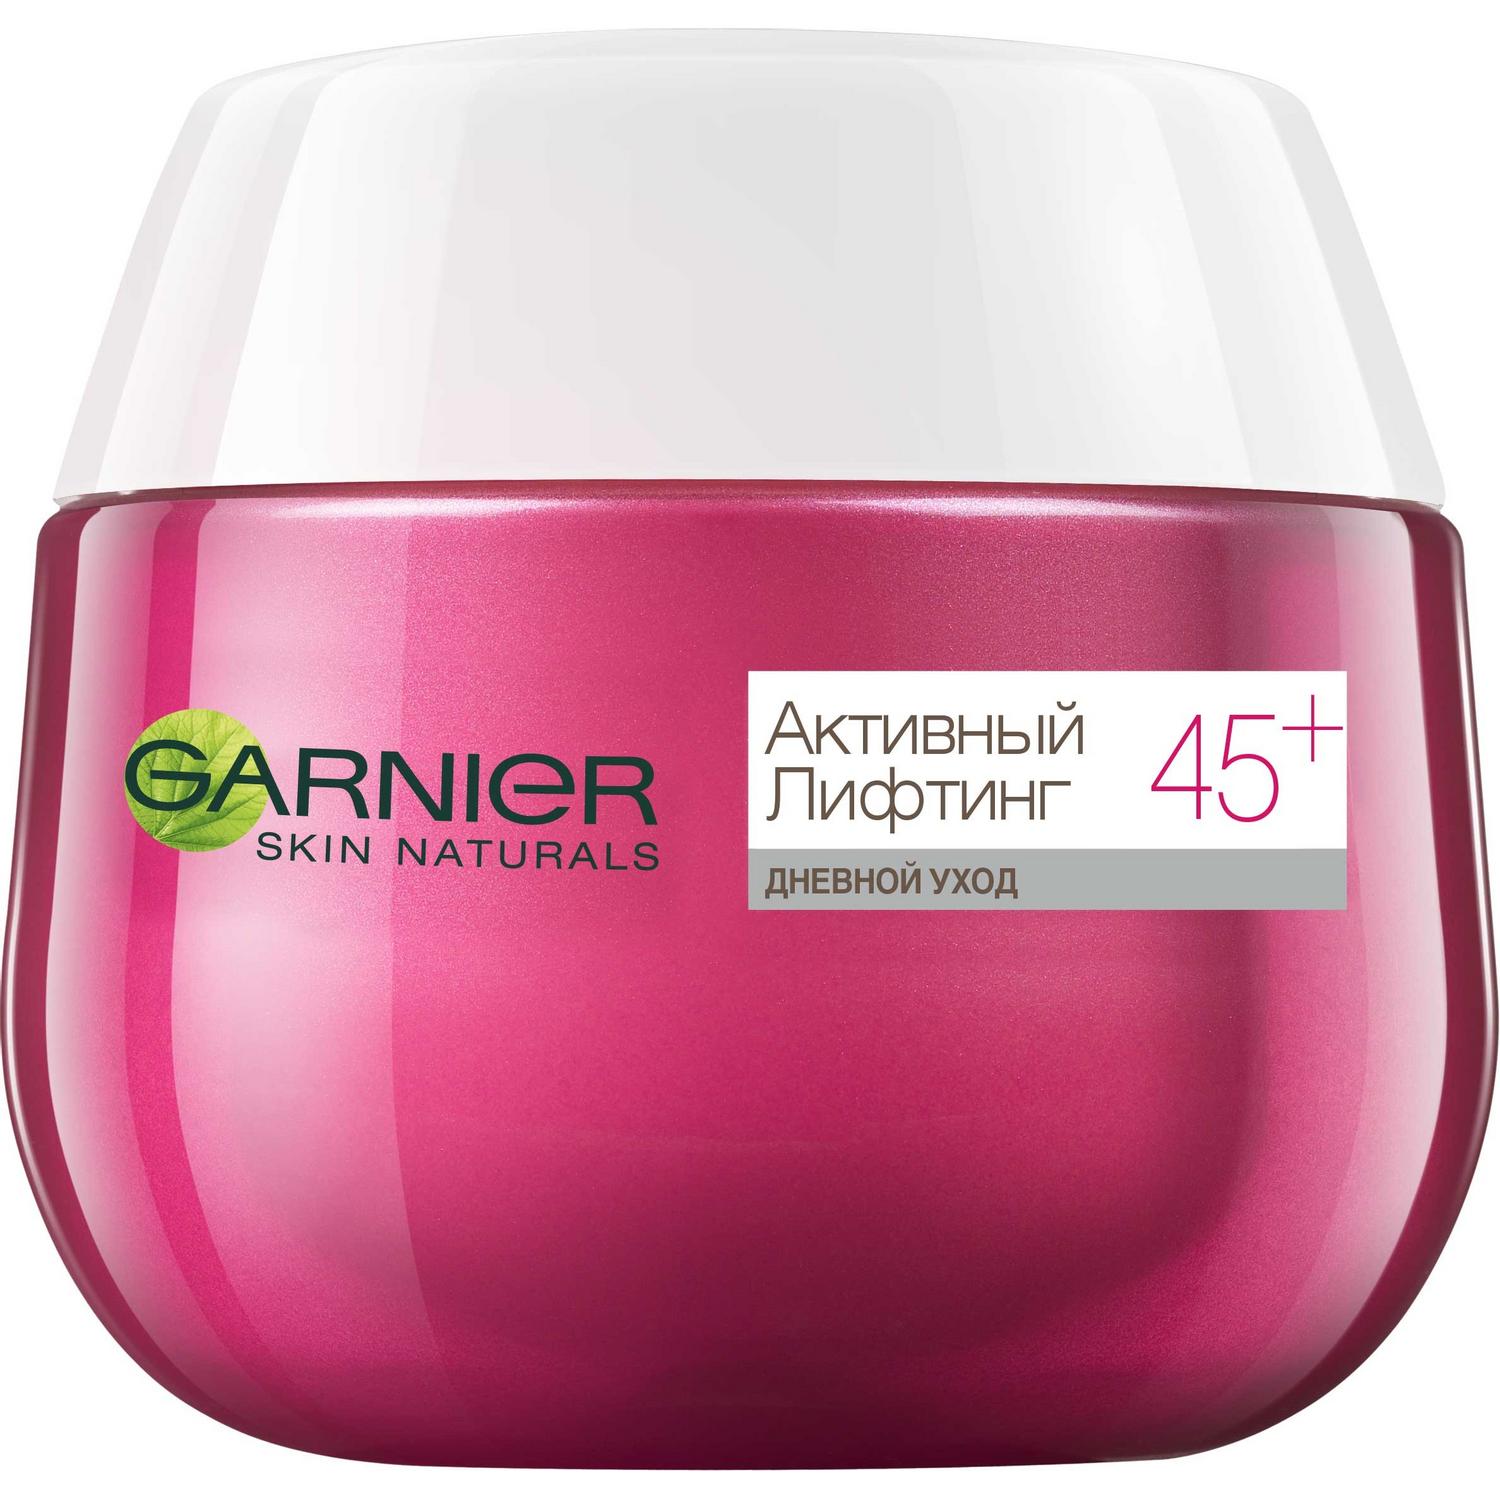 Крем для лица Garnier Skin Naturals Активный лифтинг 45+ дневной уход 50 мл, размер 8x6,6x6,6 см C4933700/6 - фото 4